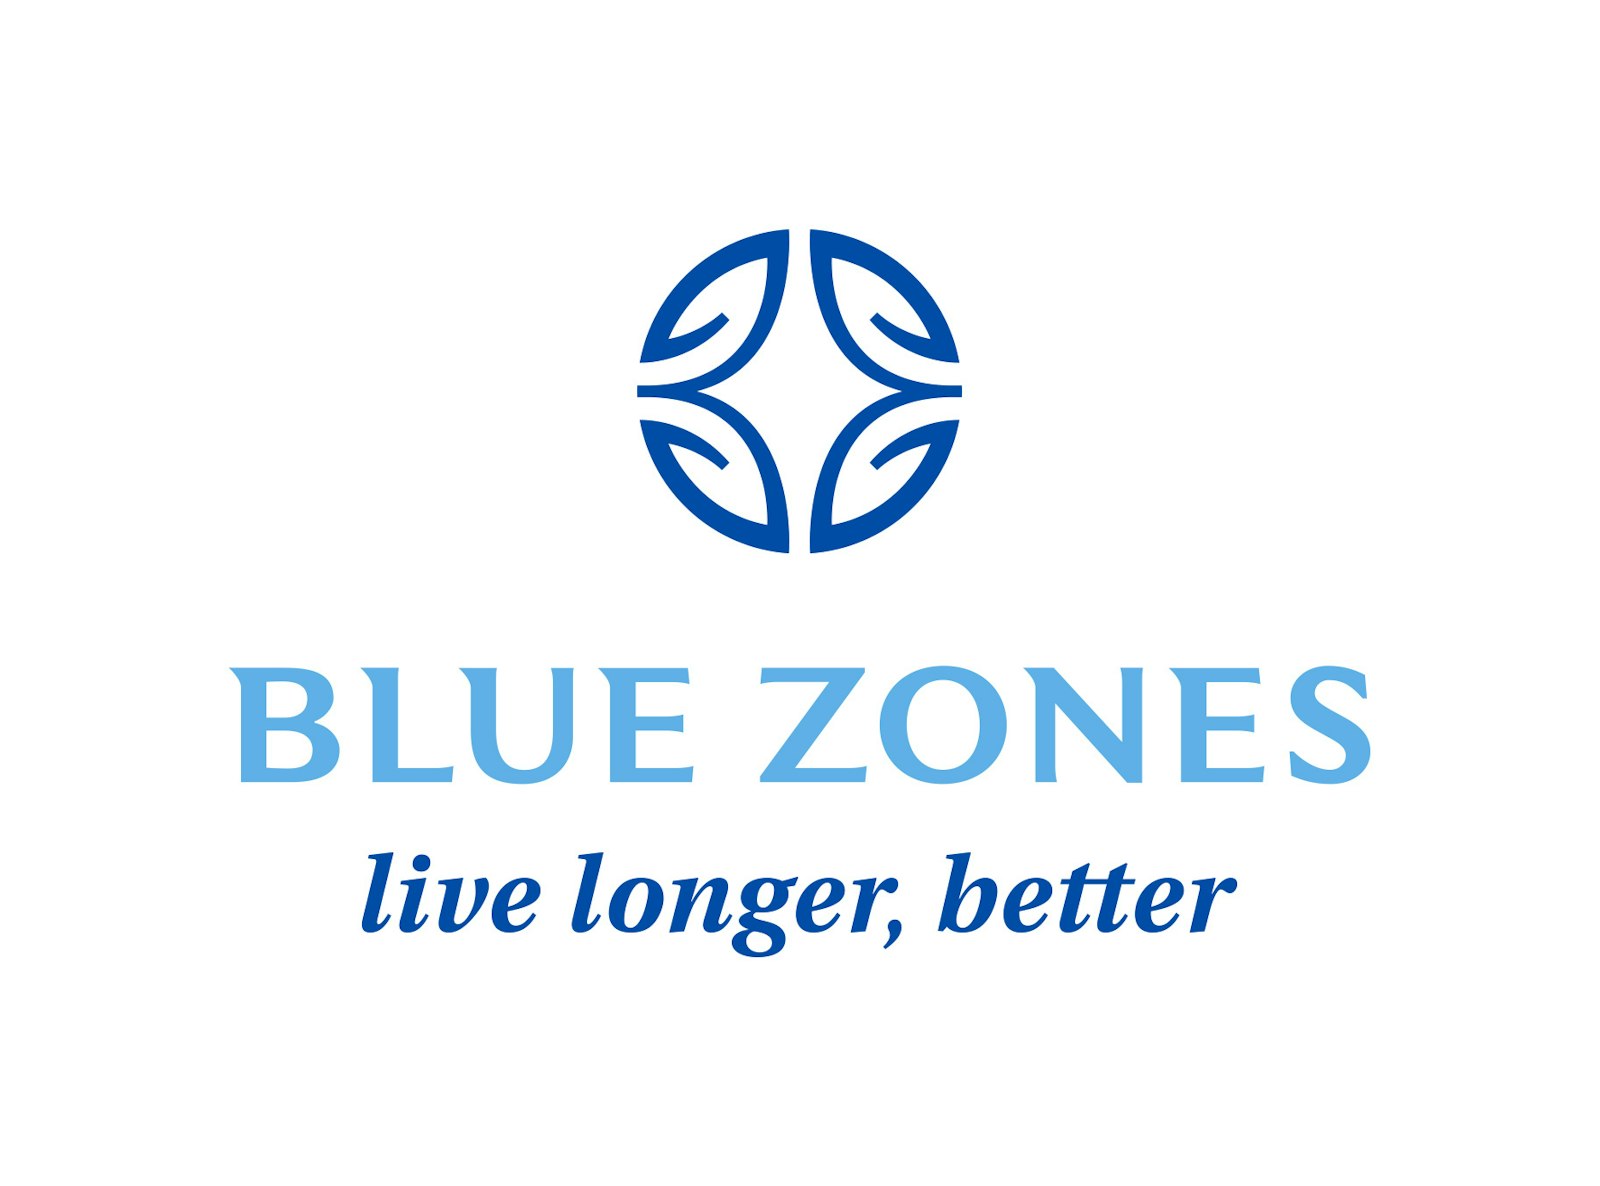 The Blue Zones by Dan Buettner brand logo mark design on white background.